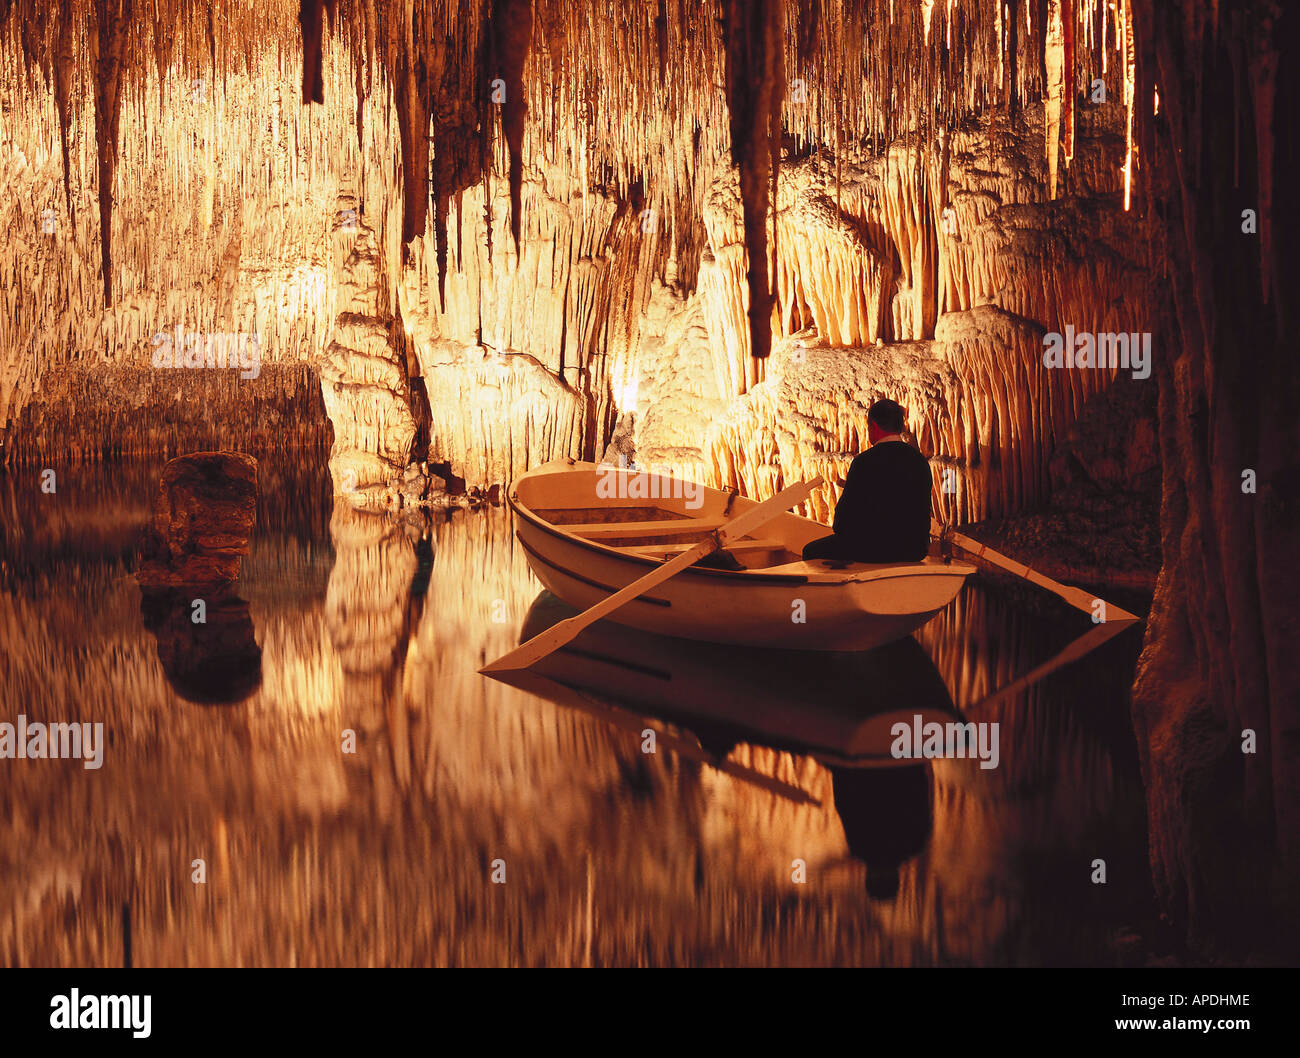 Grotte de stalactites, Cuevas del Drach Porto Christo, Majorque, Espagne Banque D'Images